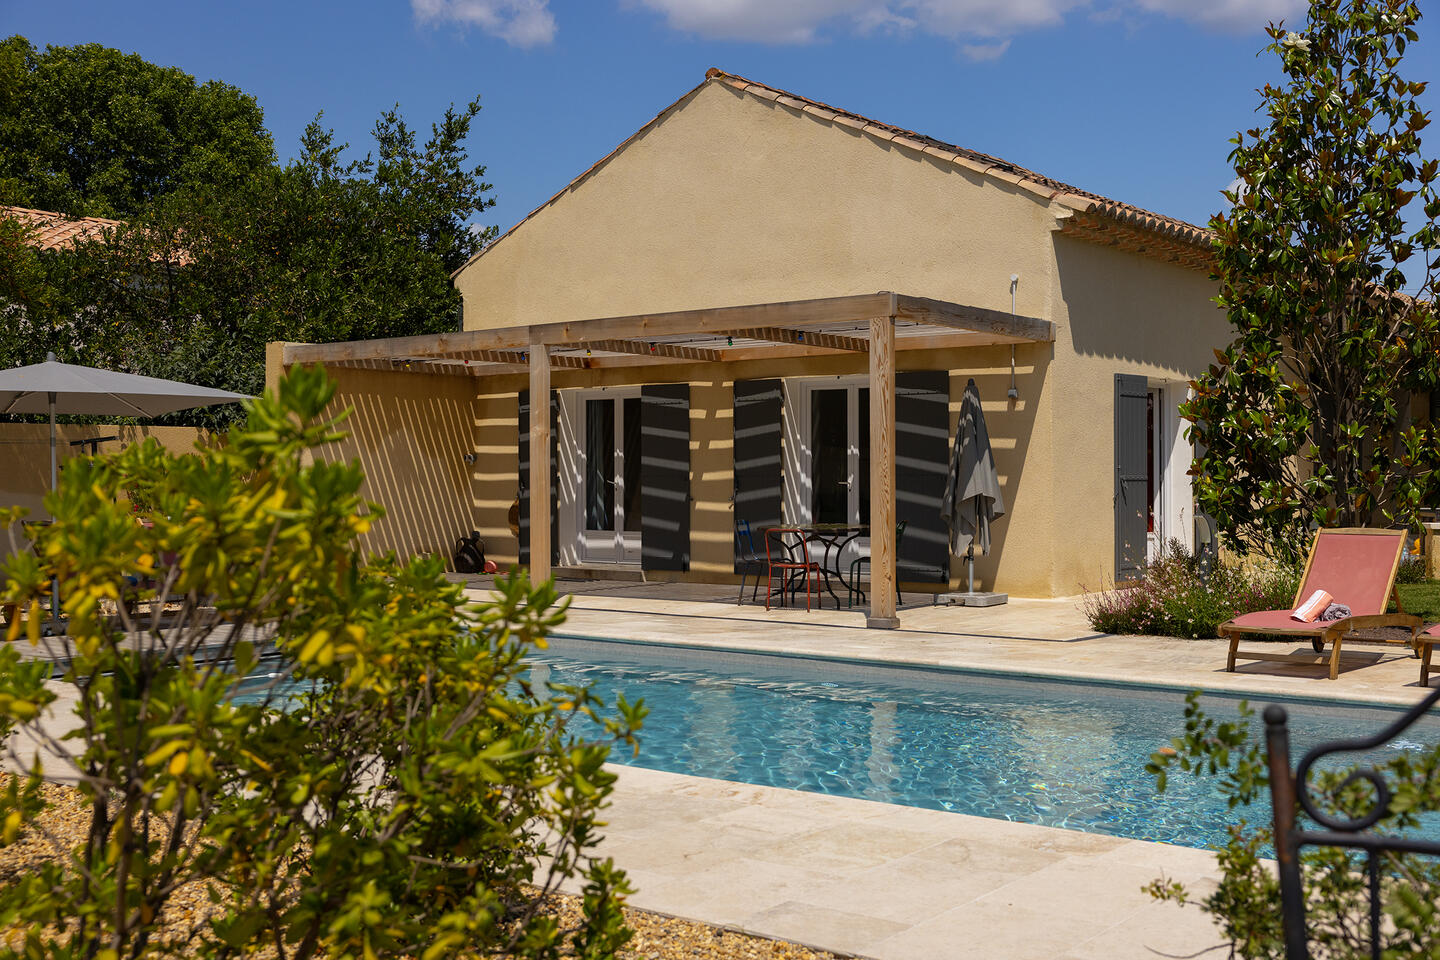 41 - La Maison de Village: Villa: Pool - Uitzicht op het gastenverblijf